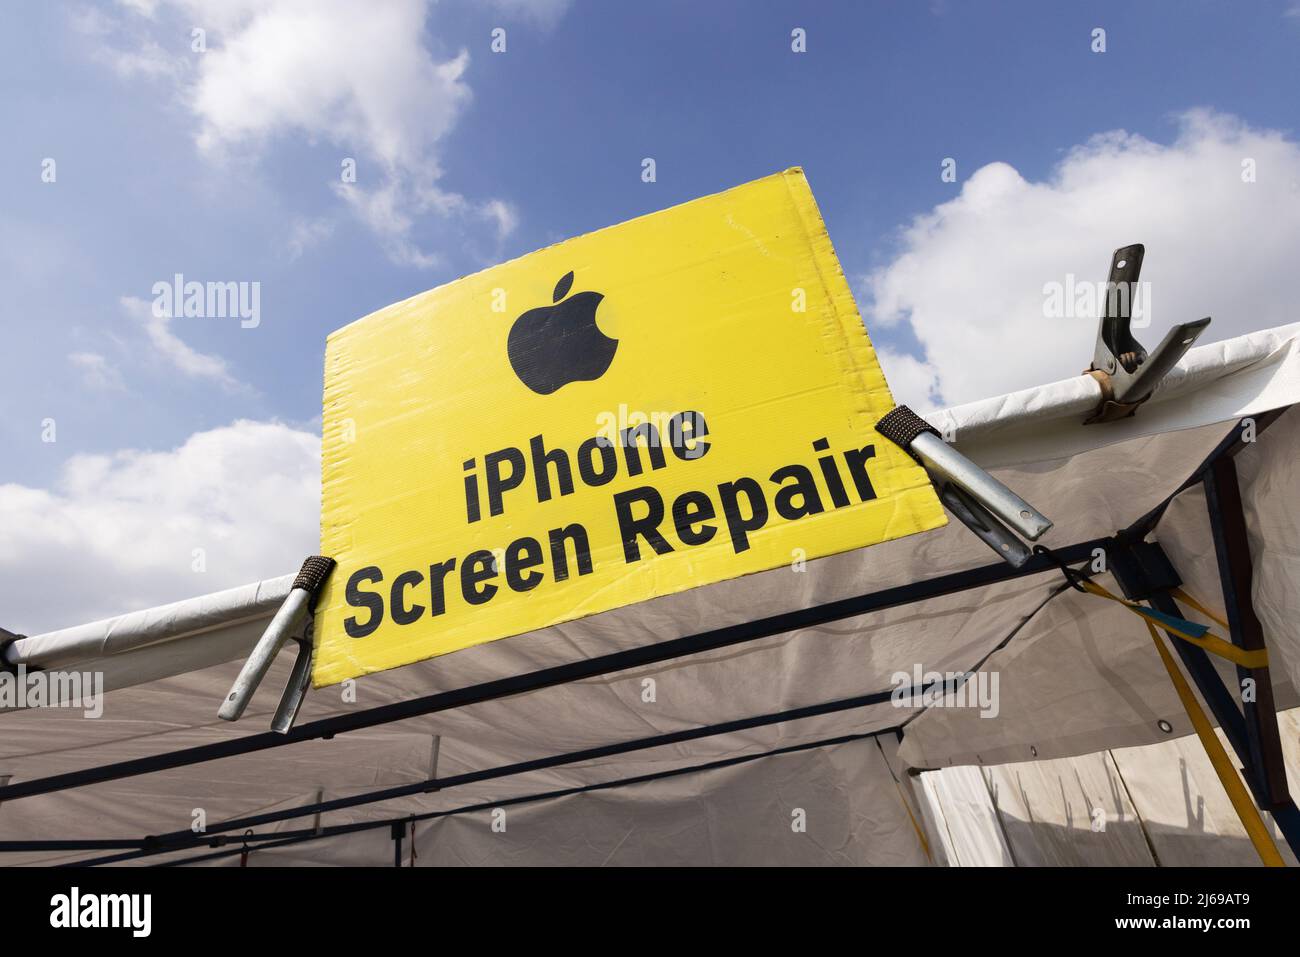 Apple iPhone screen repair sign at a mobile phone repair stall, Suffolk UK Stock Photo